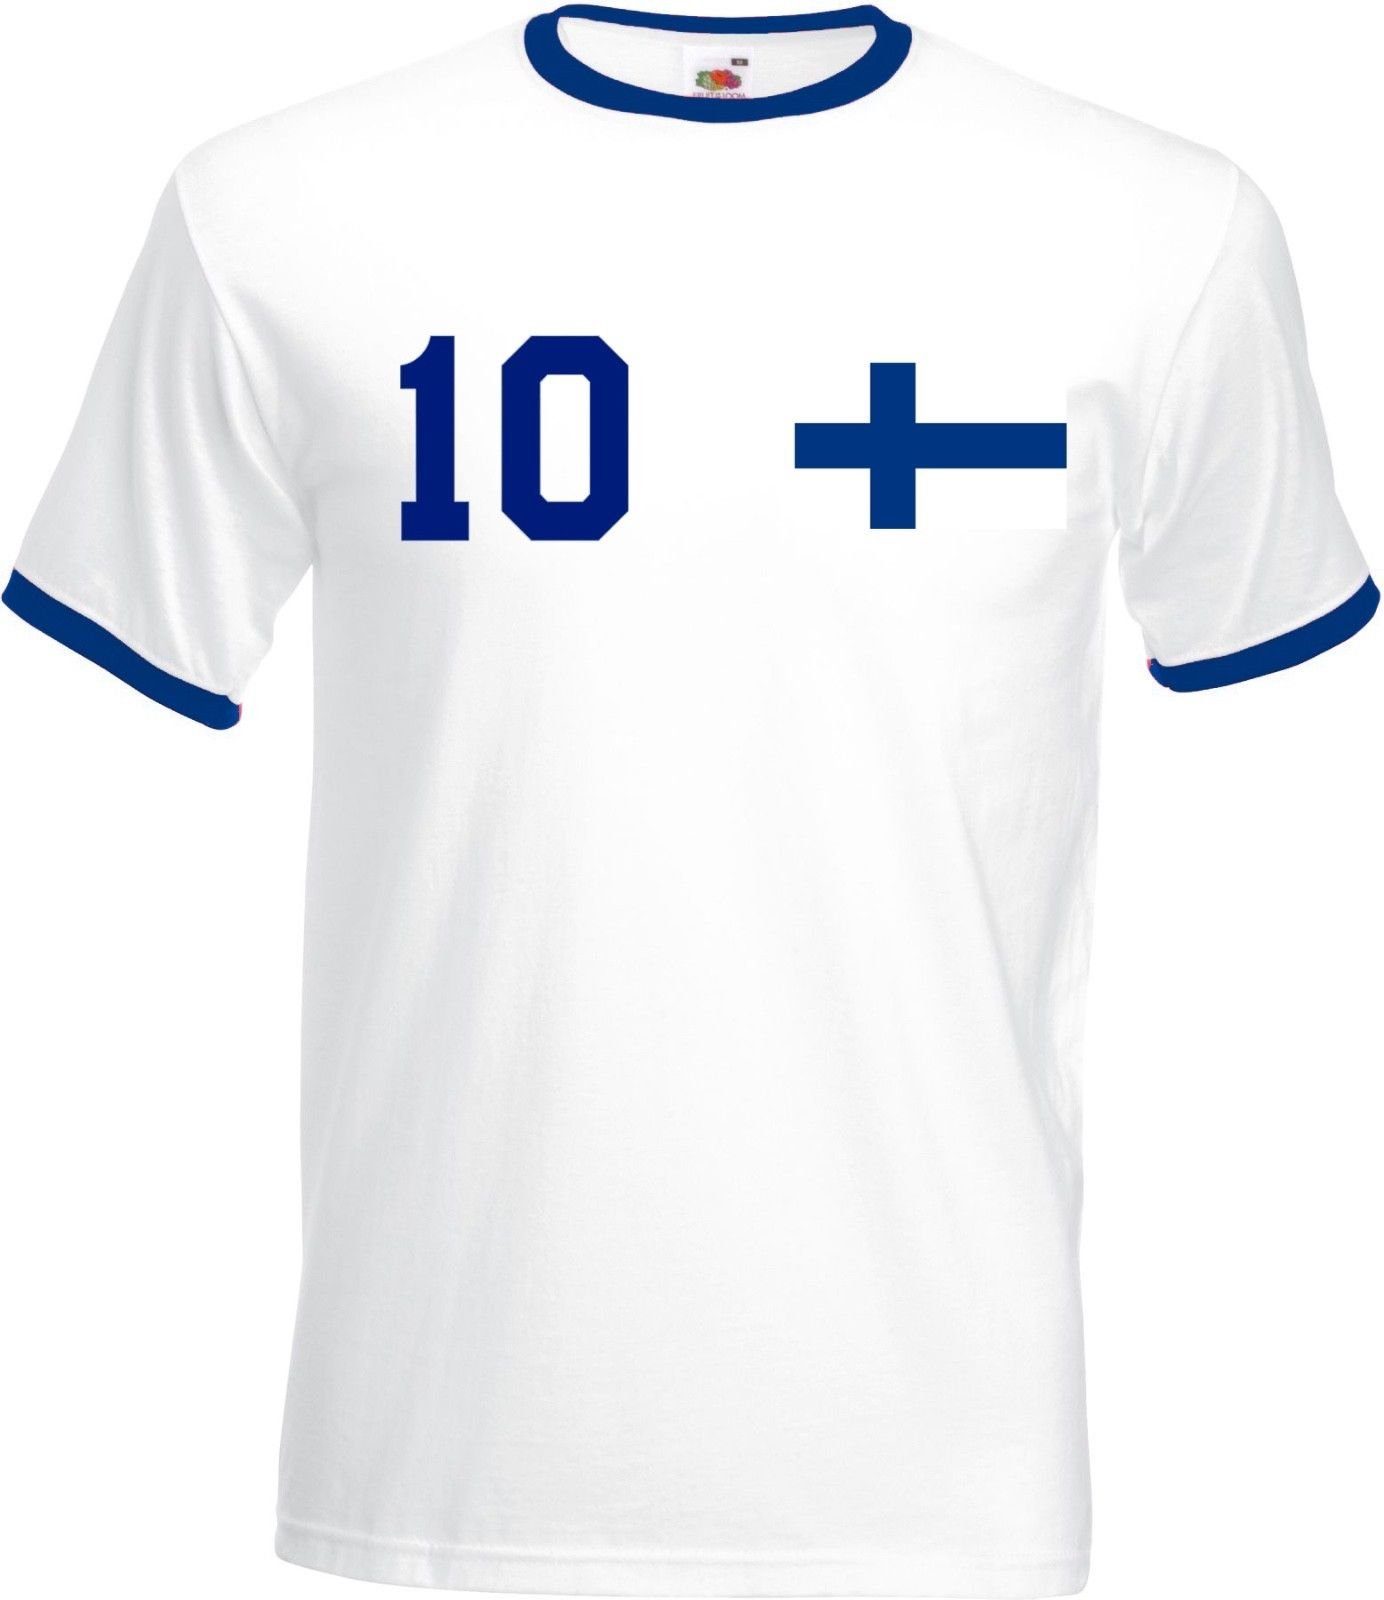 Youth Designz T-Shirt Finnland Herren T-Shirt im Fußball Trikot Look mit trendigem Motiv